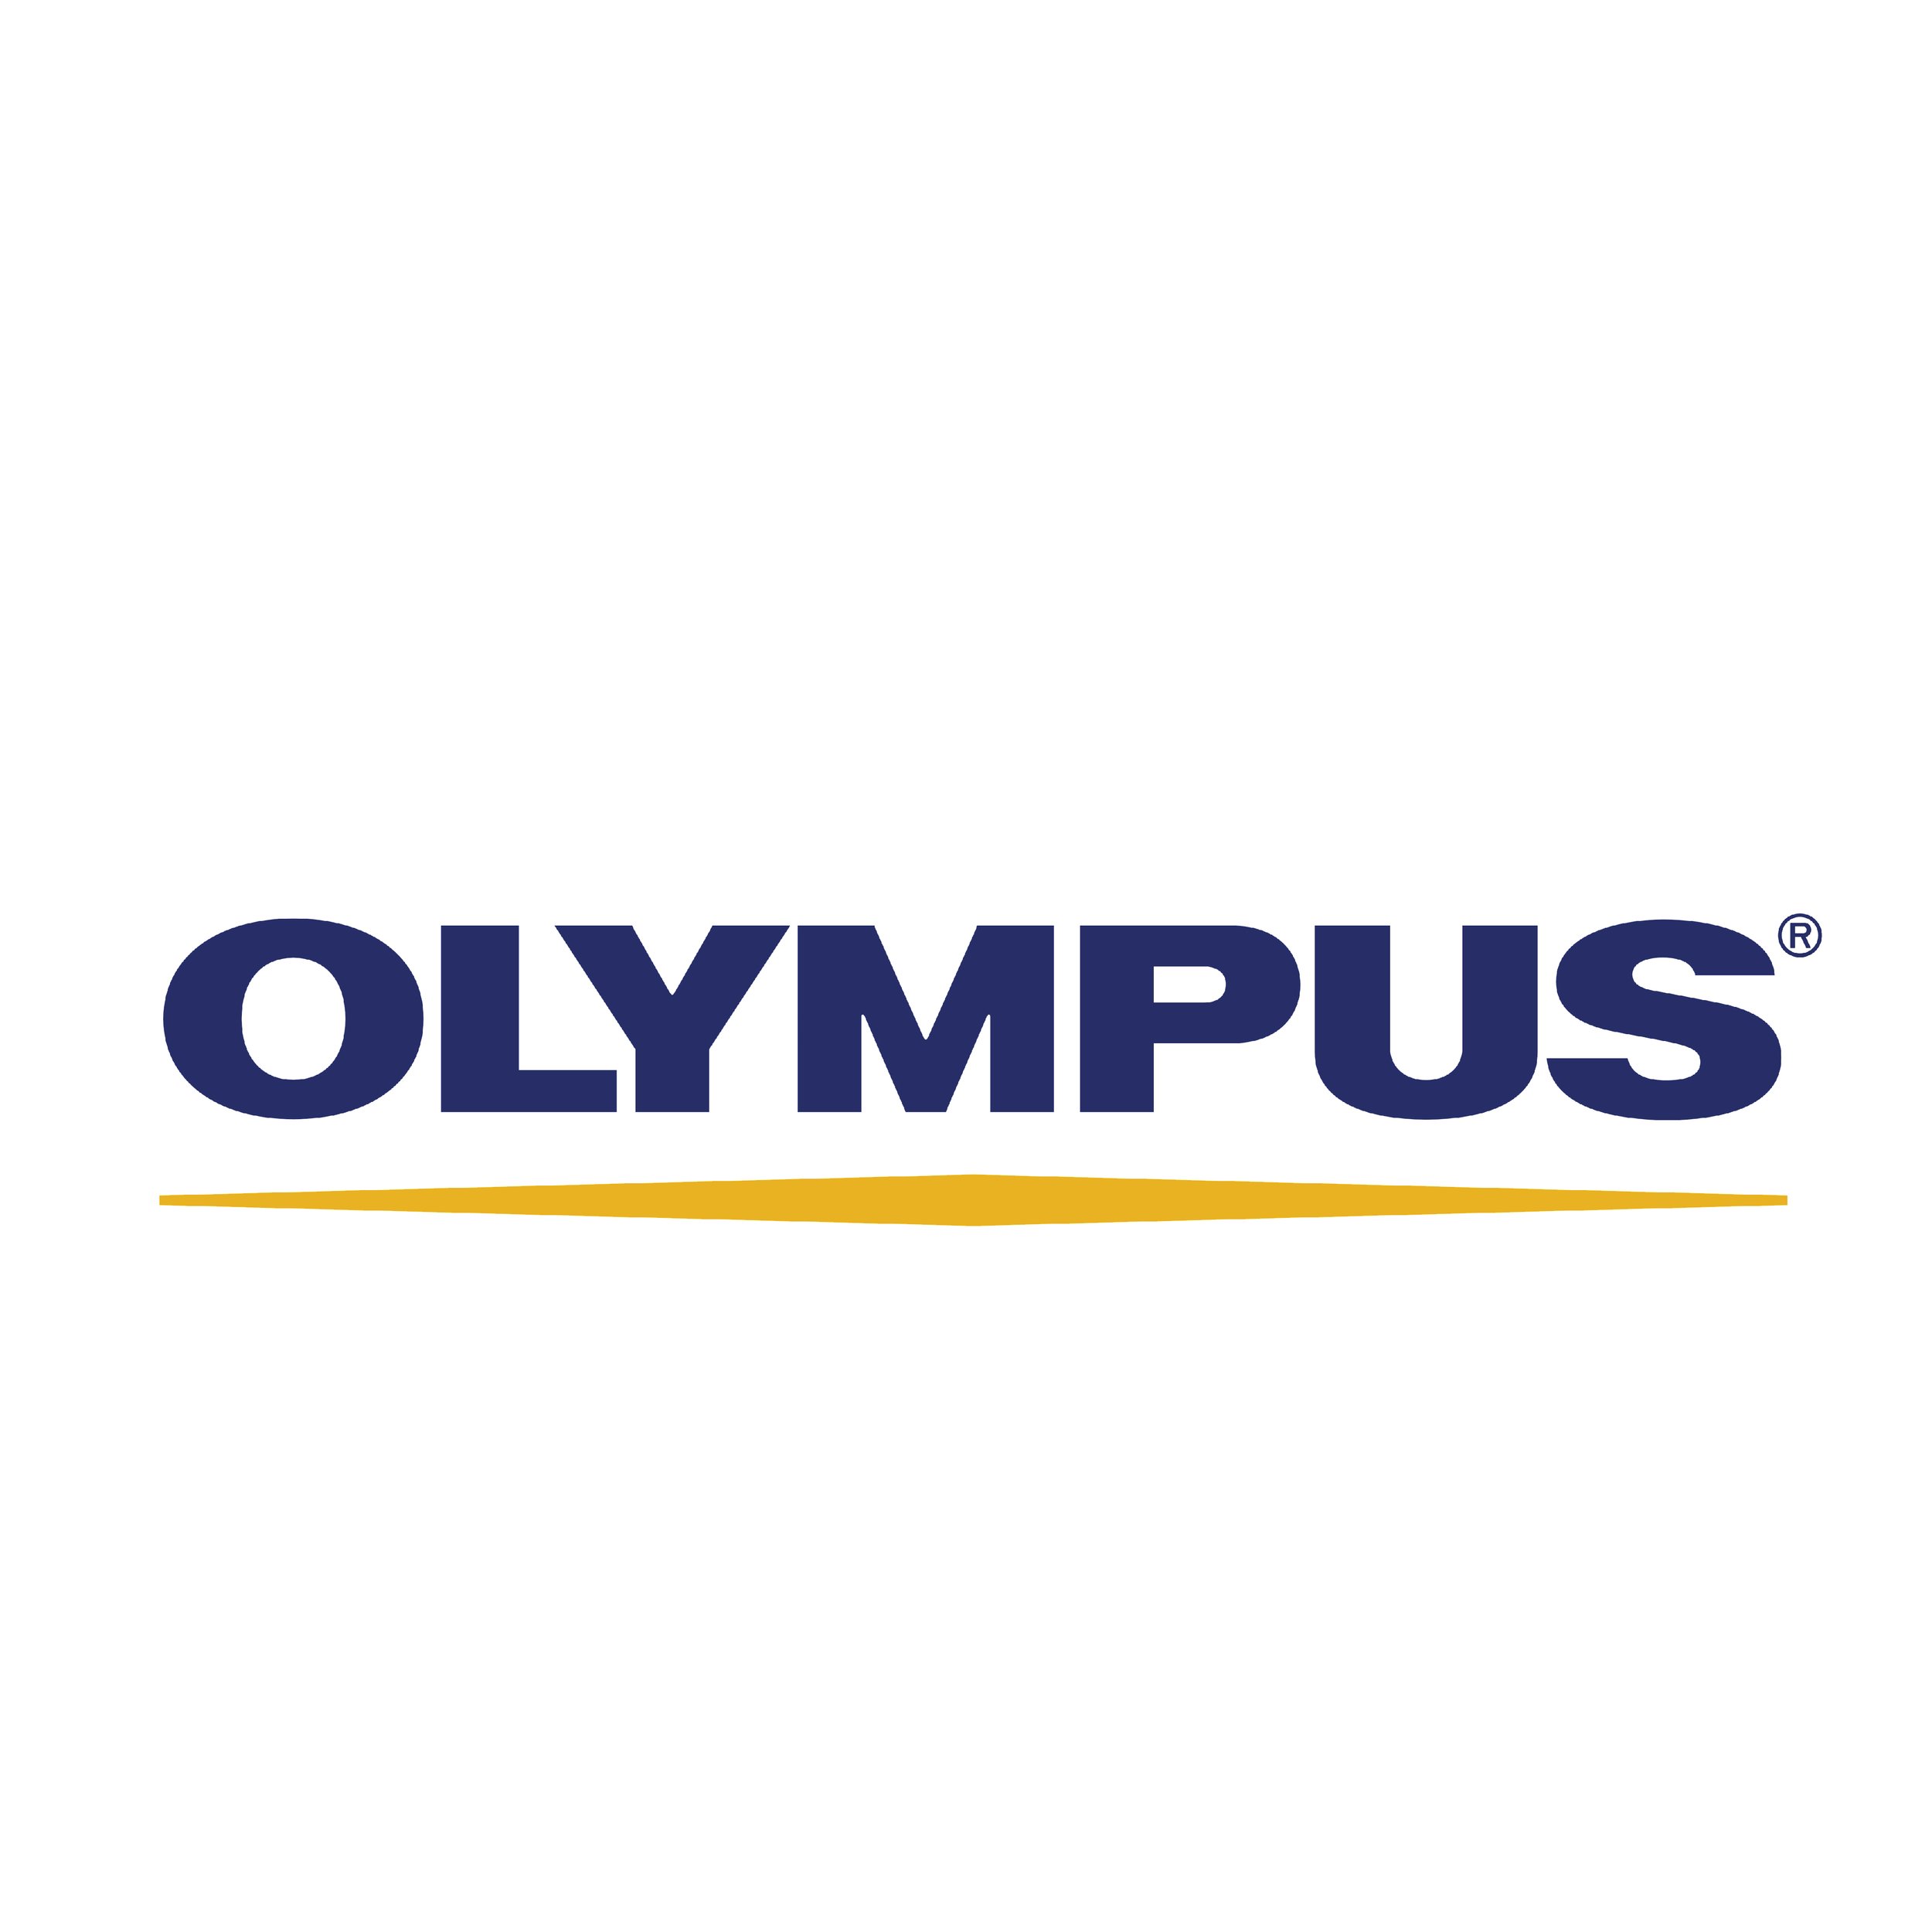 Olympus_logo_logotype.png